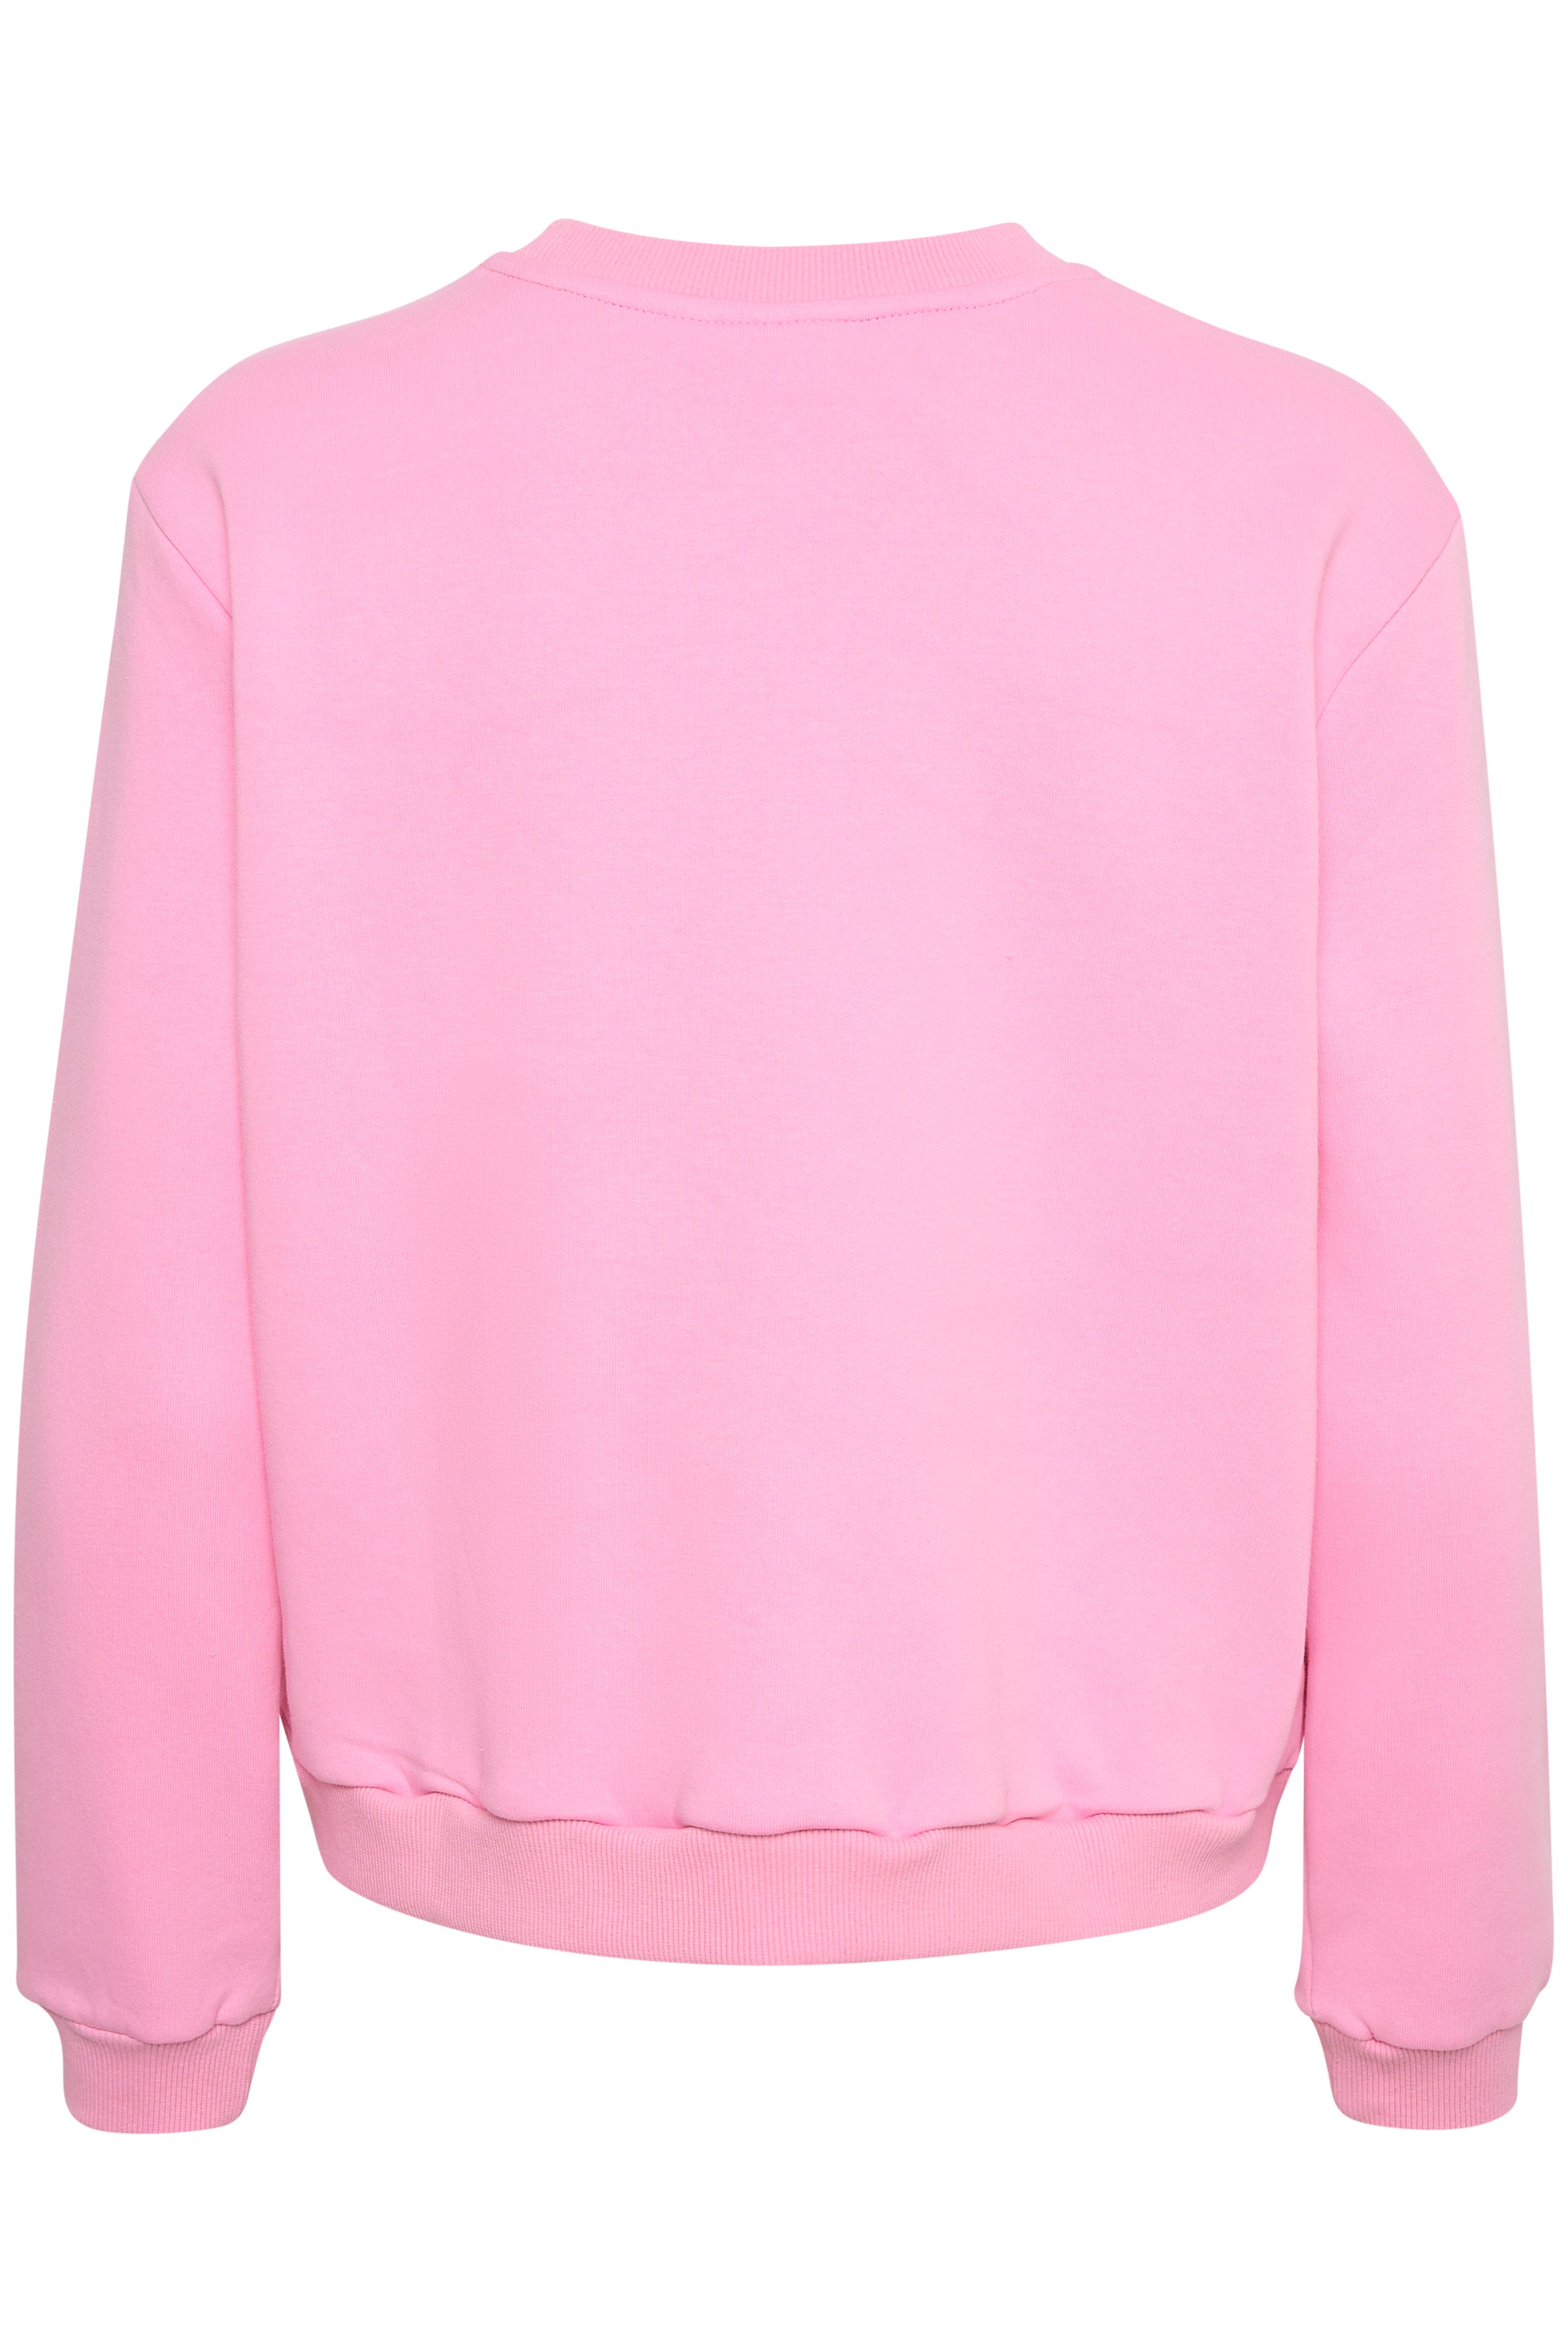 Saint Tropez Dajla Bisous Sweatshirt in Bonbon Pink